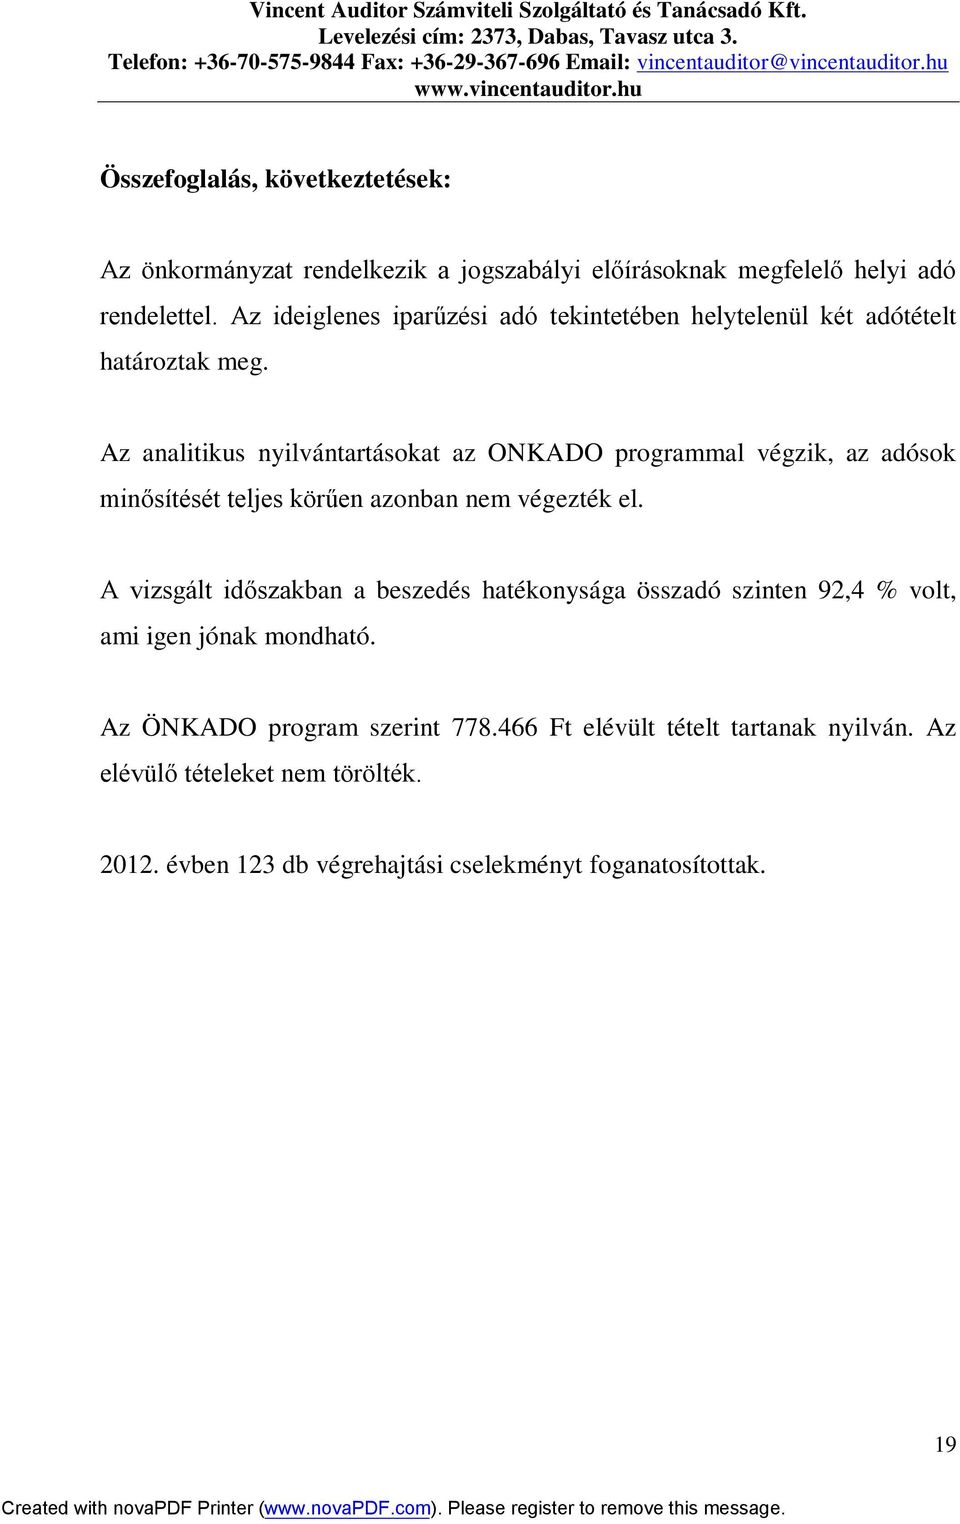 Az analitikus nyilvántartásokat az ONKADO programmal végzik, az adósok minősítését teljes körűen azonban nem végezték el.